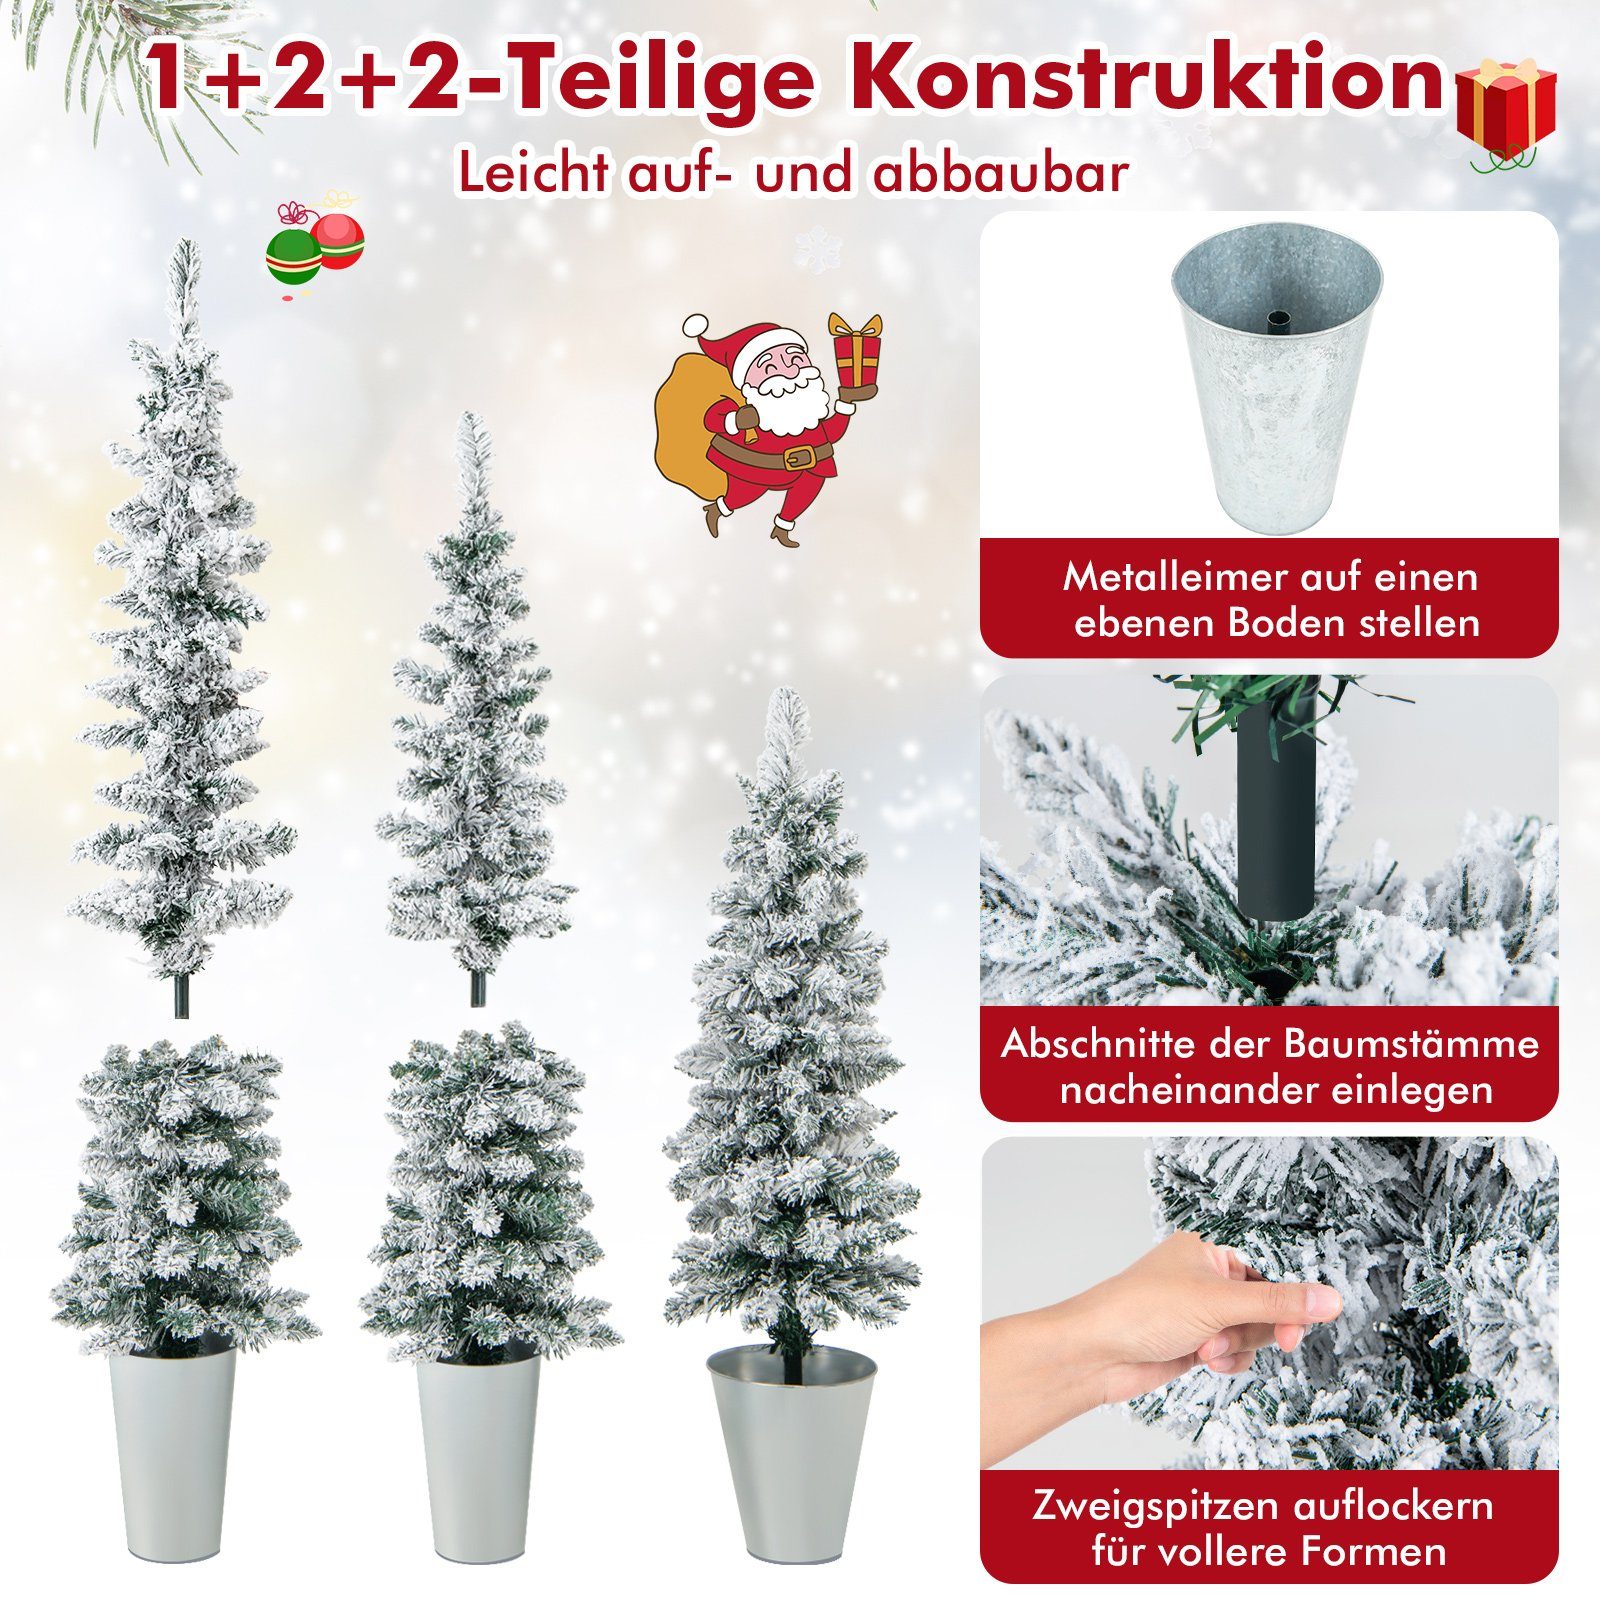 Weihnachtsbaum, Bleistift COSTWAY Weiß 90+120+150cm Silber, Künstlicher Tannenbaum 3er Grün,